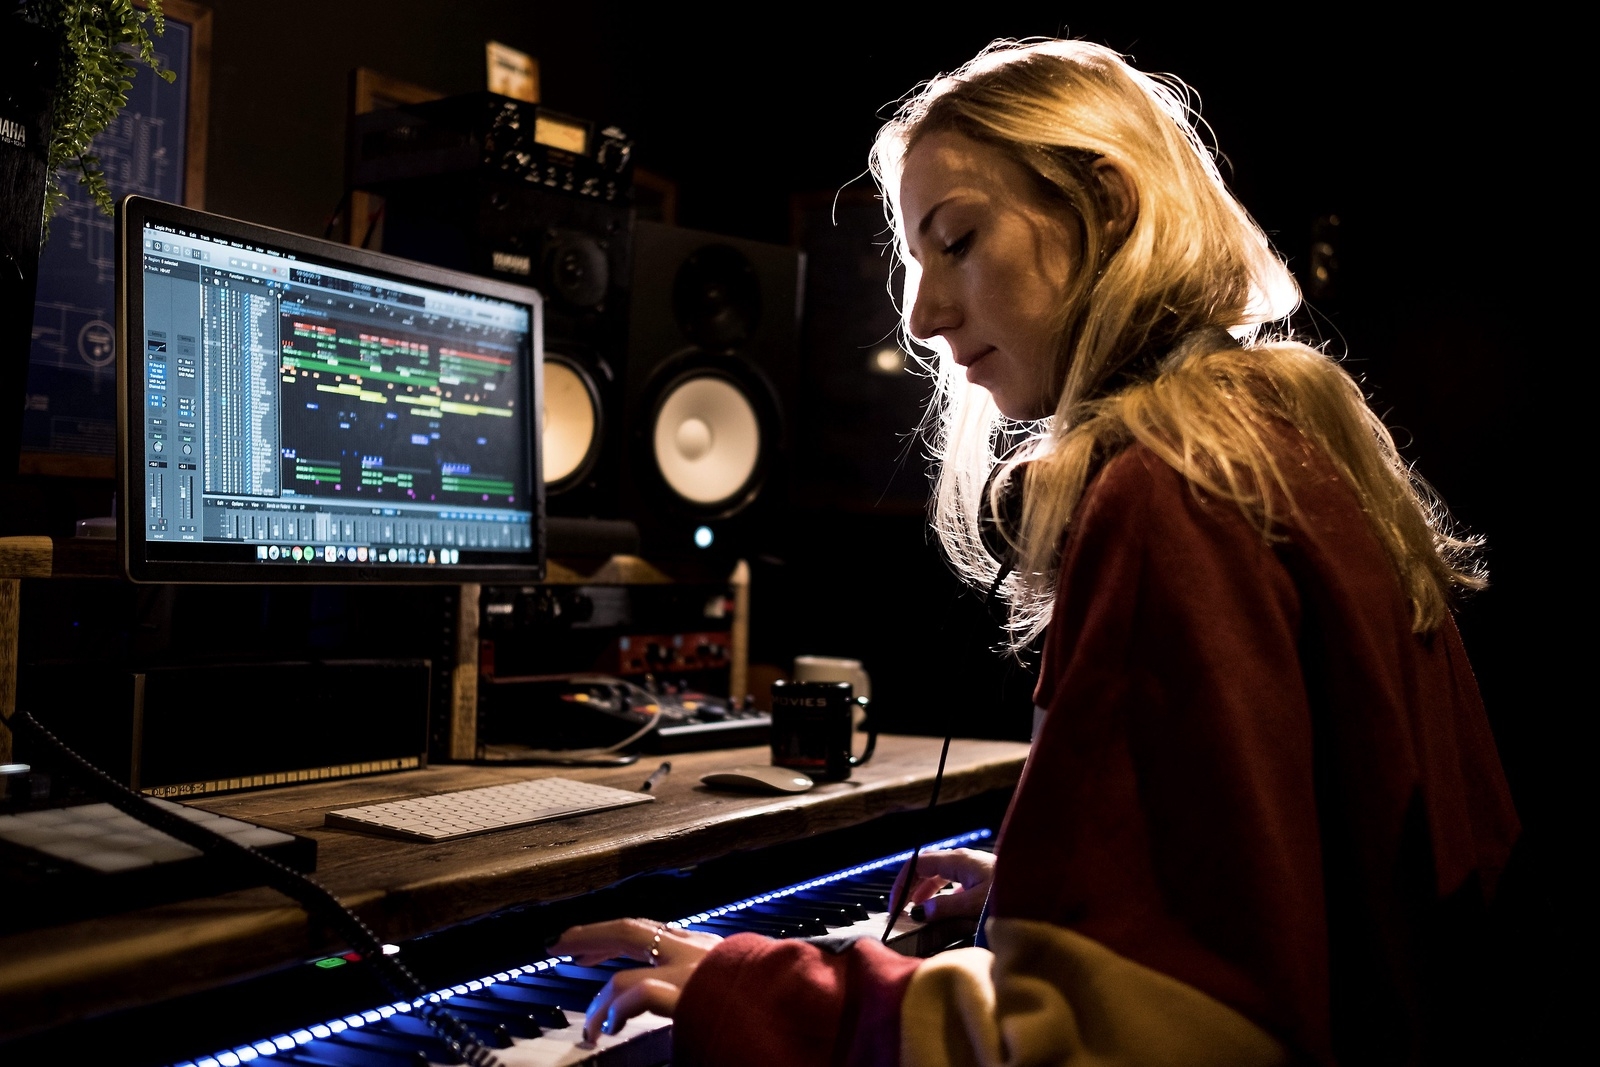 Joanna jobbar både med egen musik och med andras, bland annat som ljudtekniker.